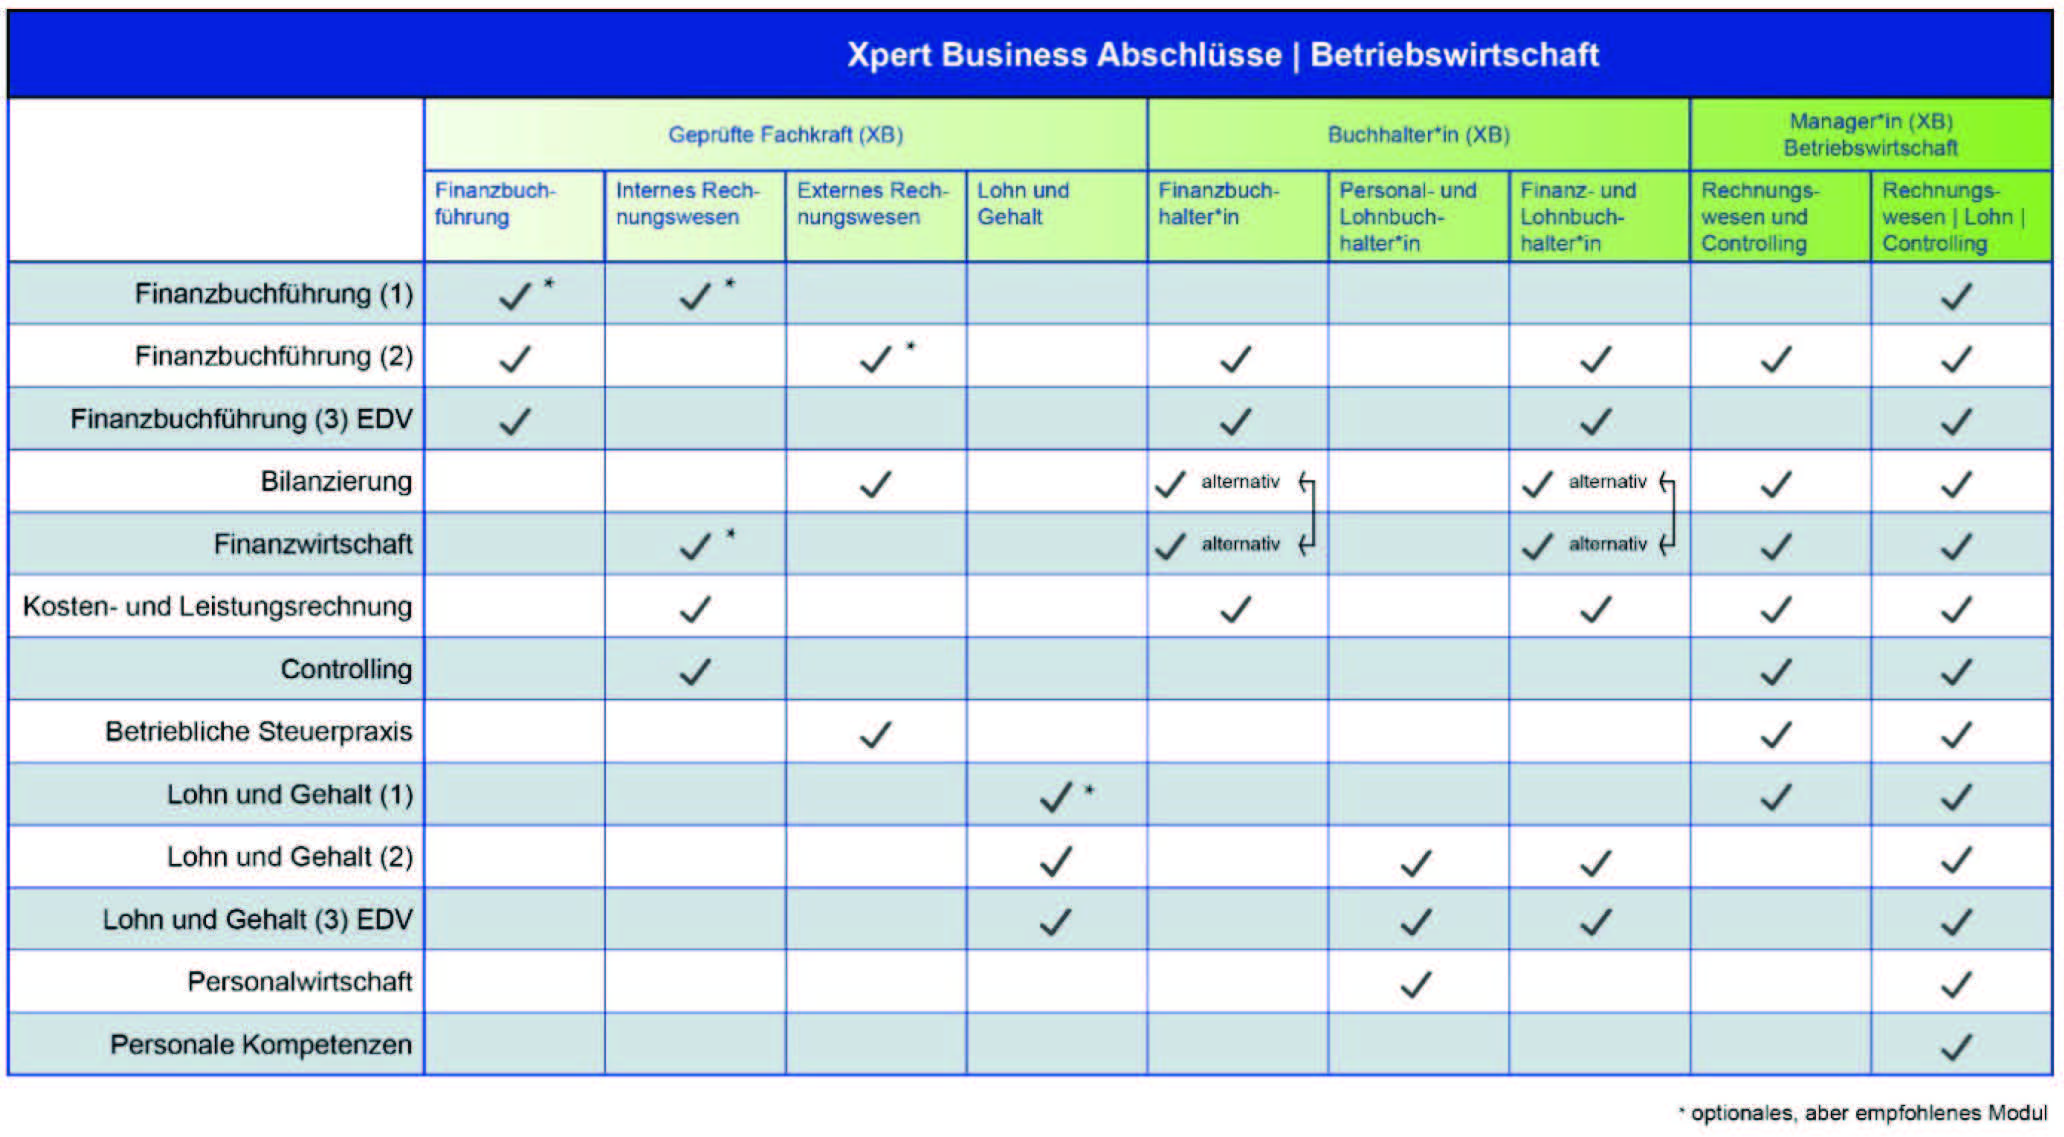 Die Tabelle zeigt die möglichen Abschlüsse und Fächer des Xpert Business Kurses in der Betriebswirtschaft. 